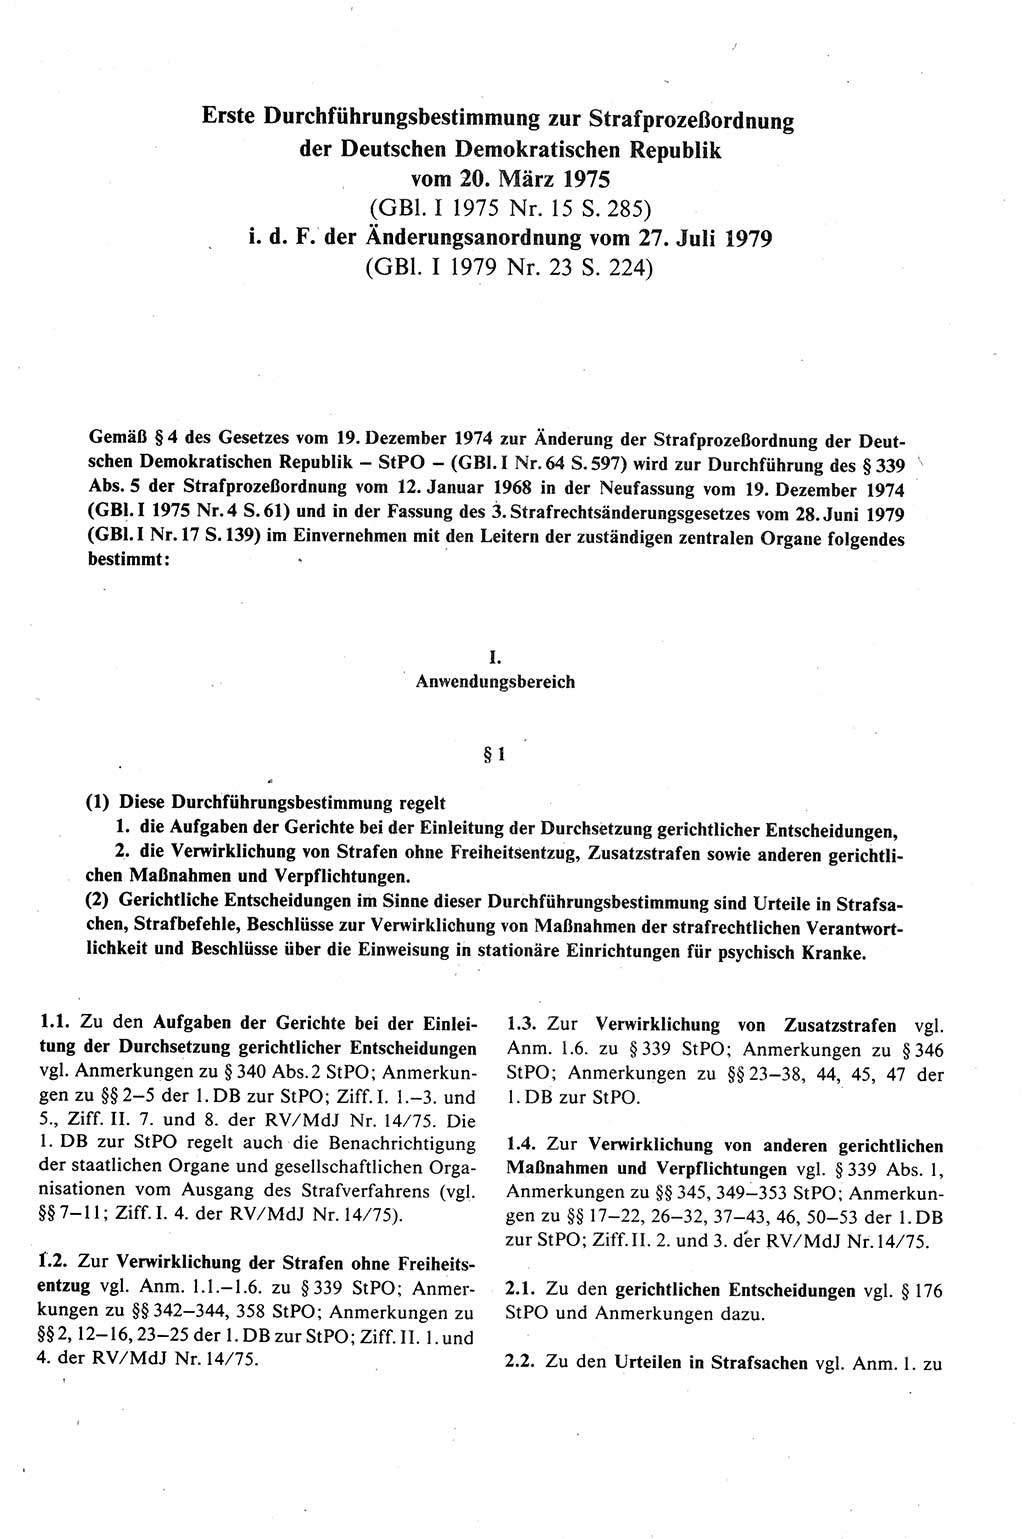 Strafprozeßrecht der DDR (Deutsche Demokratische Republik), Kommentar zur Strafprozeßordnung (StPO) 1989, Seite 441 (Strafprozeßr. DDR Komm. StPO 1989, S. 441)